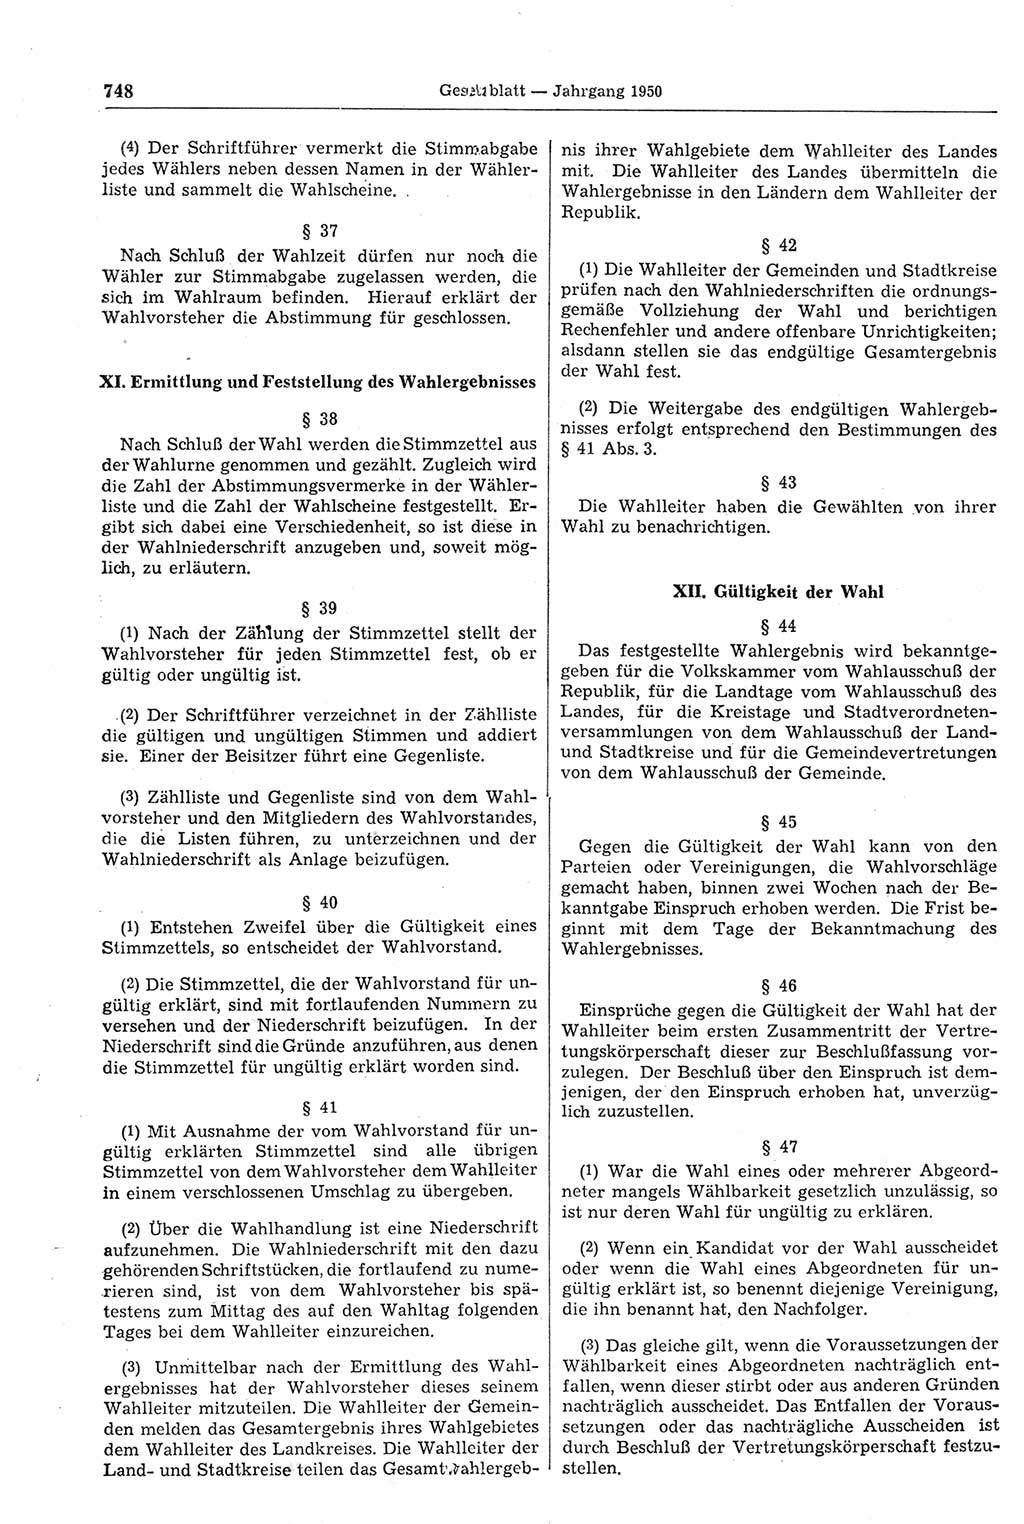 Gesetzblatt (GBl.) der Deutschen Demokratischen Republik (DDR) 1950, Seite 748 (GBl. DDR 1950, S. 748)